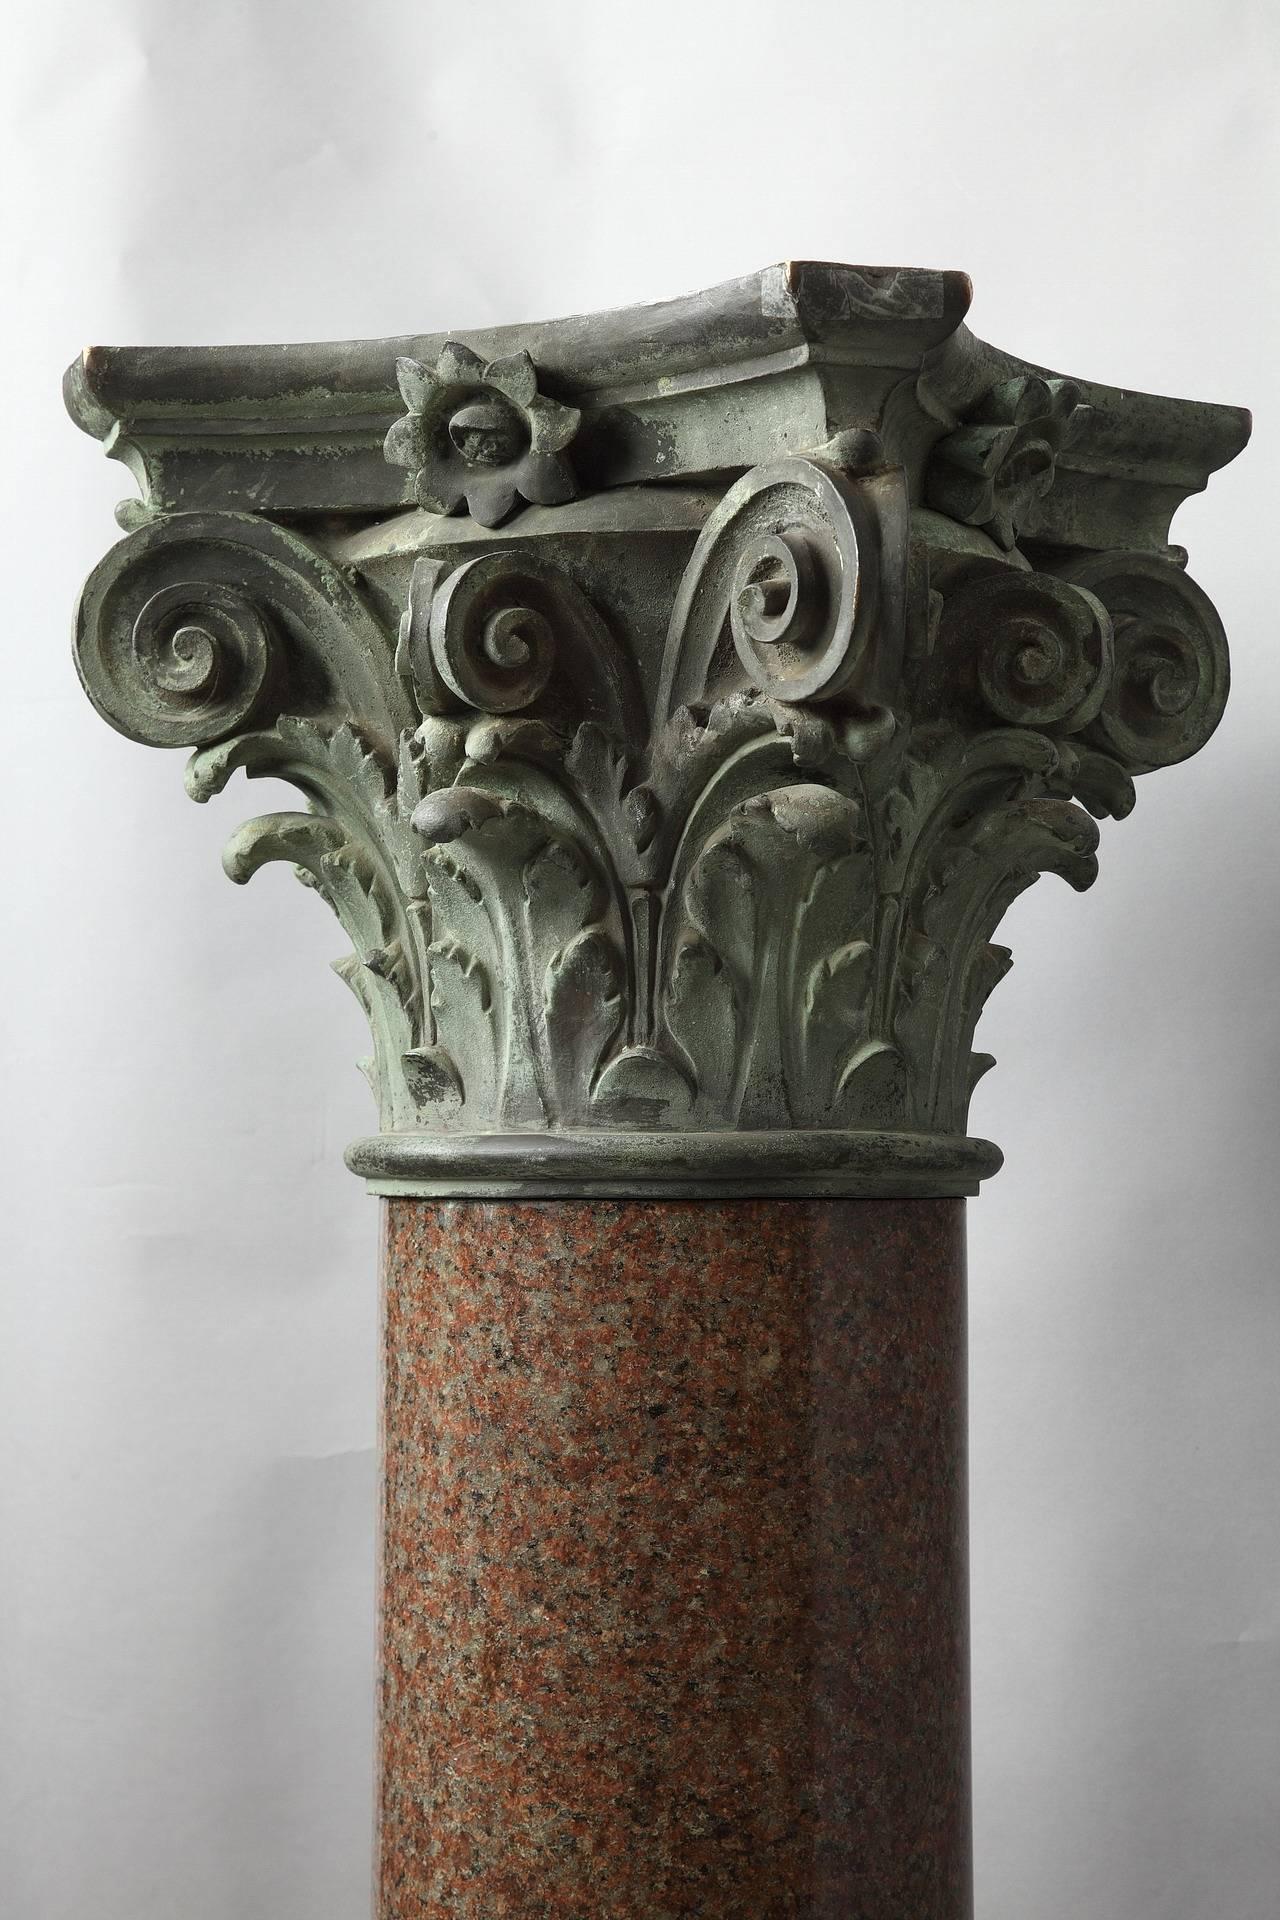 granite columns for sale